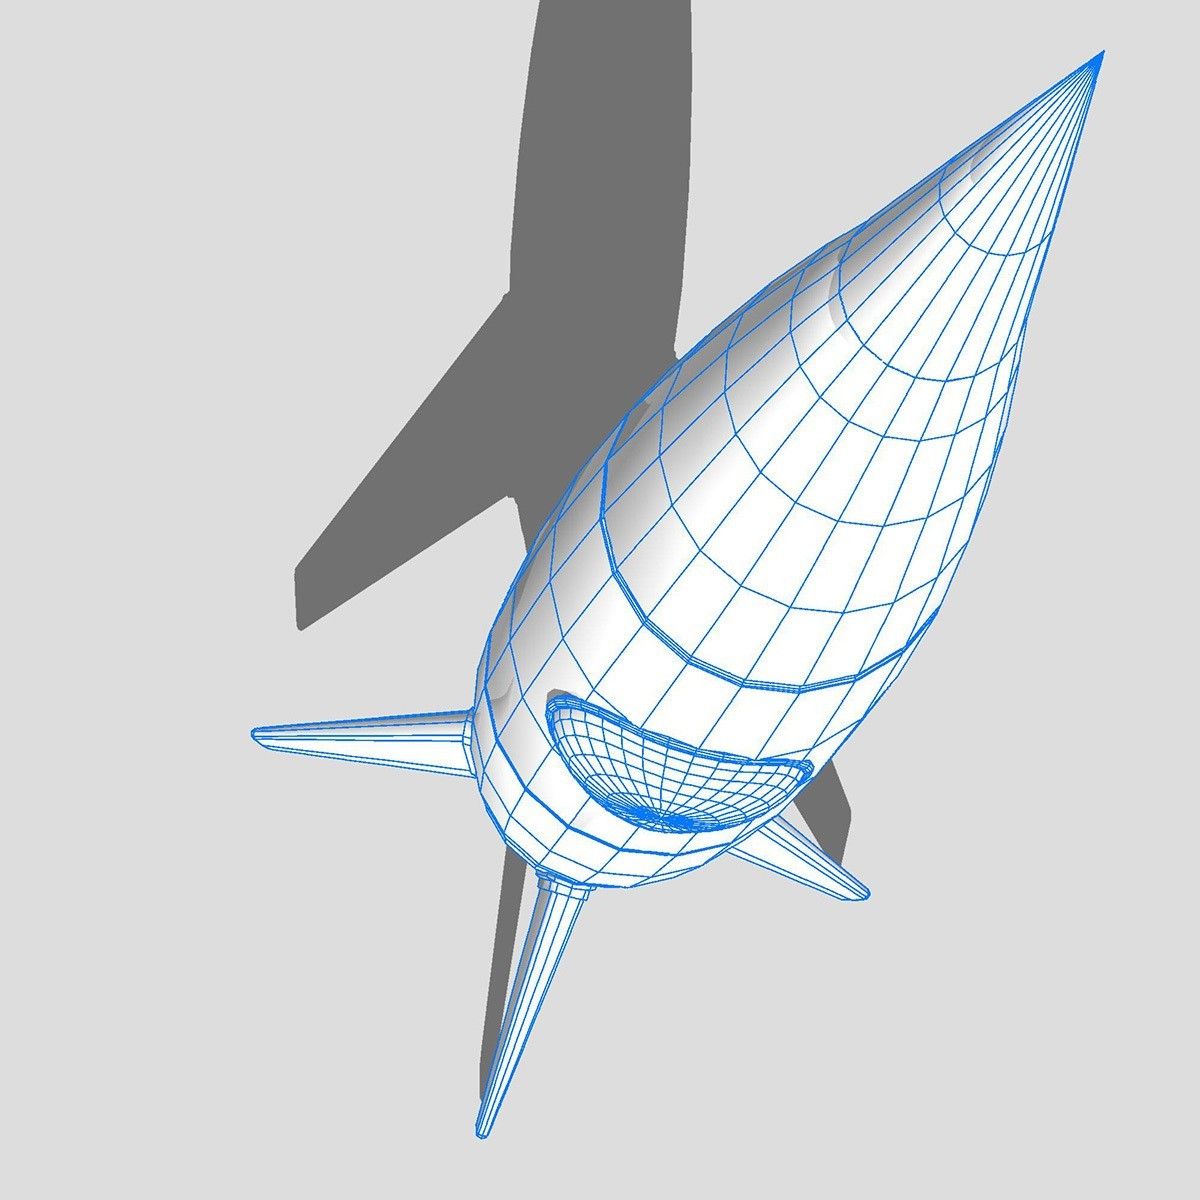 transport_pack_wairframe_0003.jpg Download file rocket • 3D printer object, scifikid